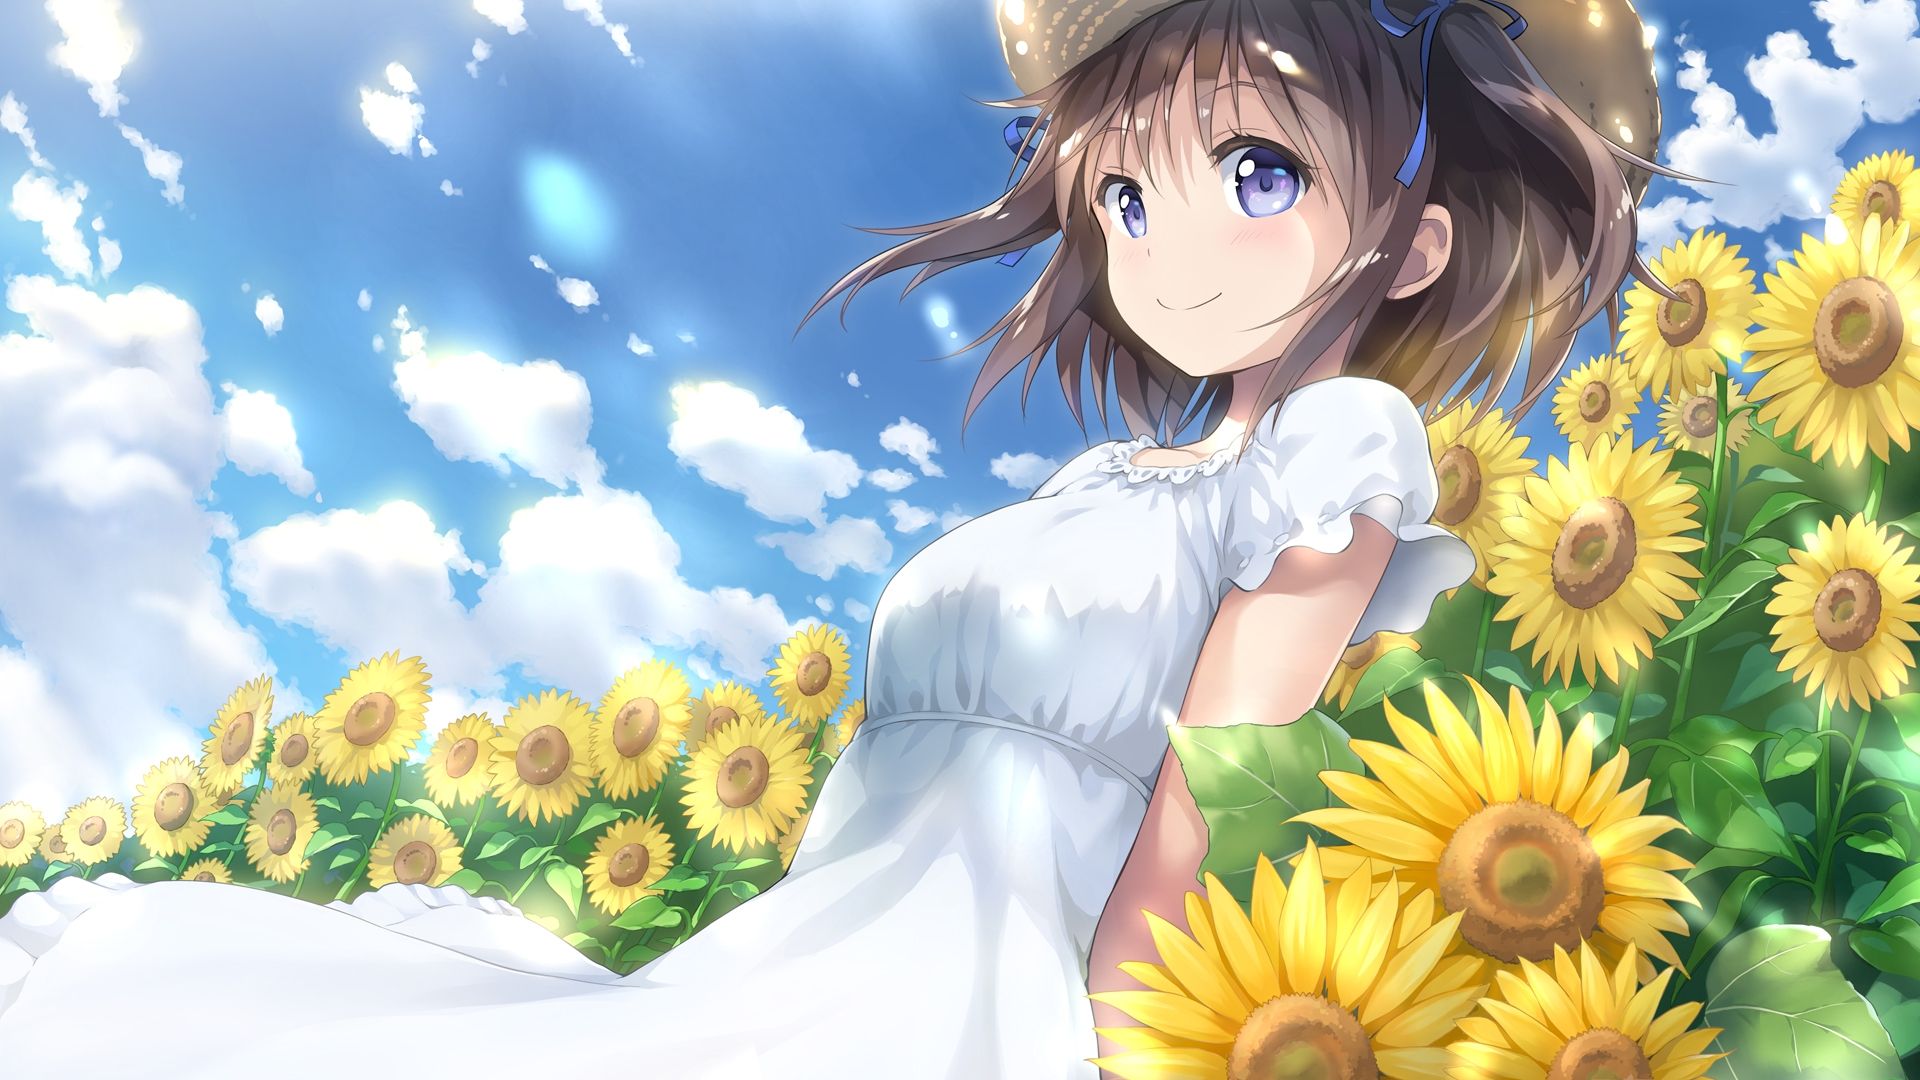 Download 1920x1080 Sunflowers, Summer, Dress, Short Hair, Anime Girl Wallpaper for Widescreen